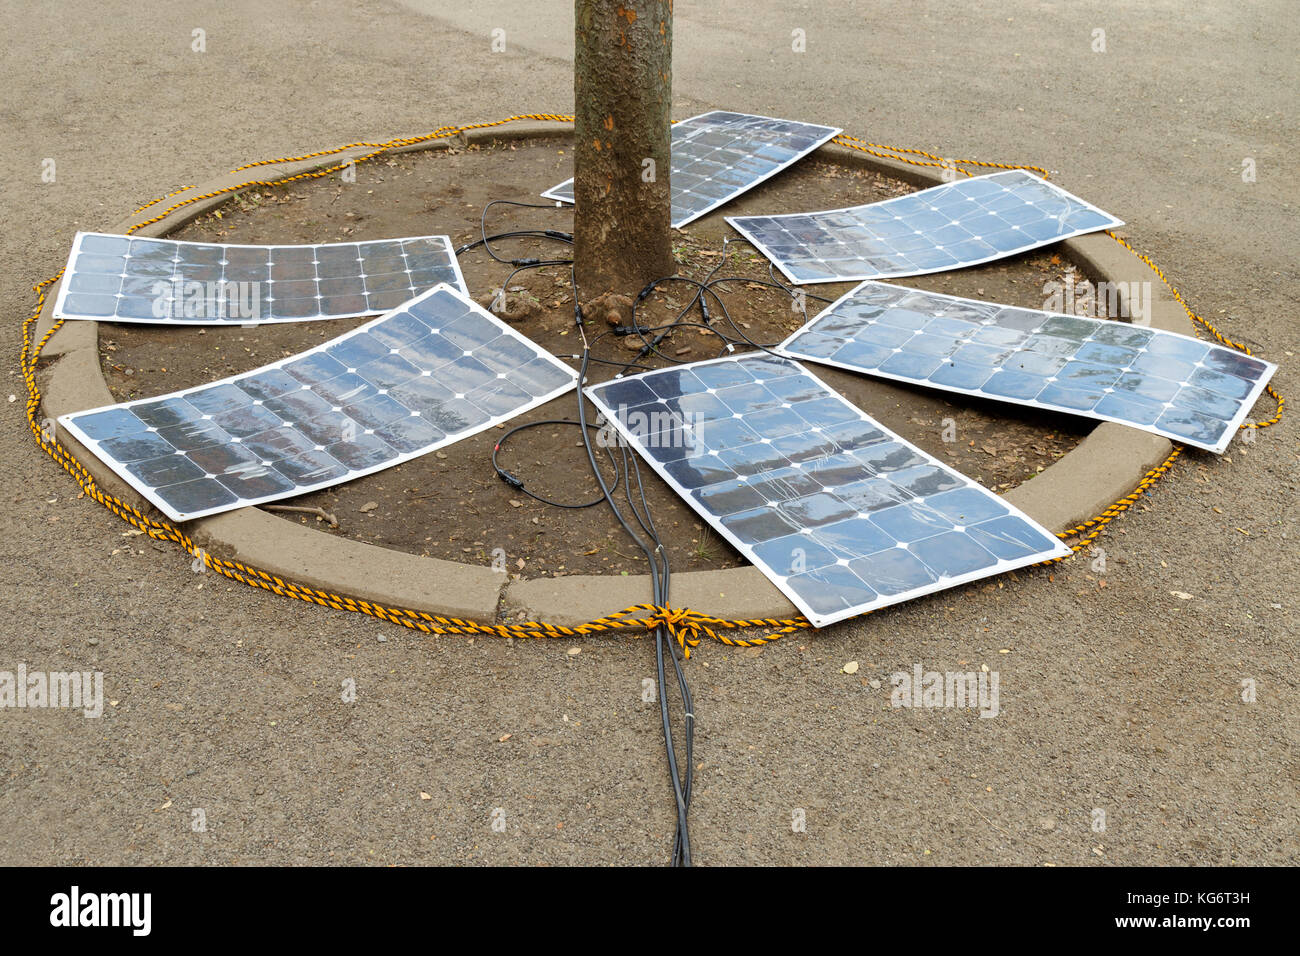 Los paneles solares flexibles / célula solar monocristalino (celda solar  flexible) eficacia de carga bajo el árbol en el suelo. concepto de energía  alternativa Fotografía de stock - Alamy